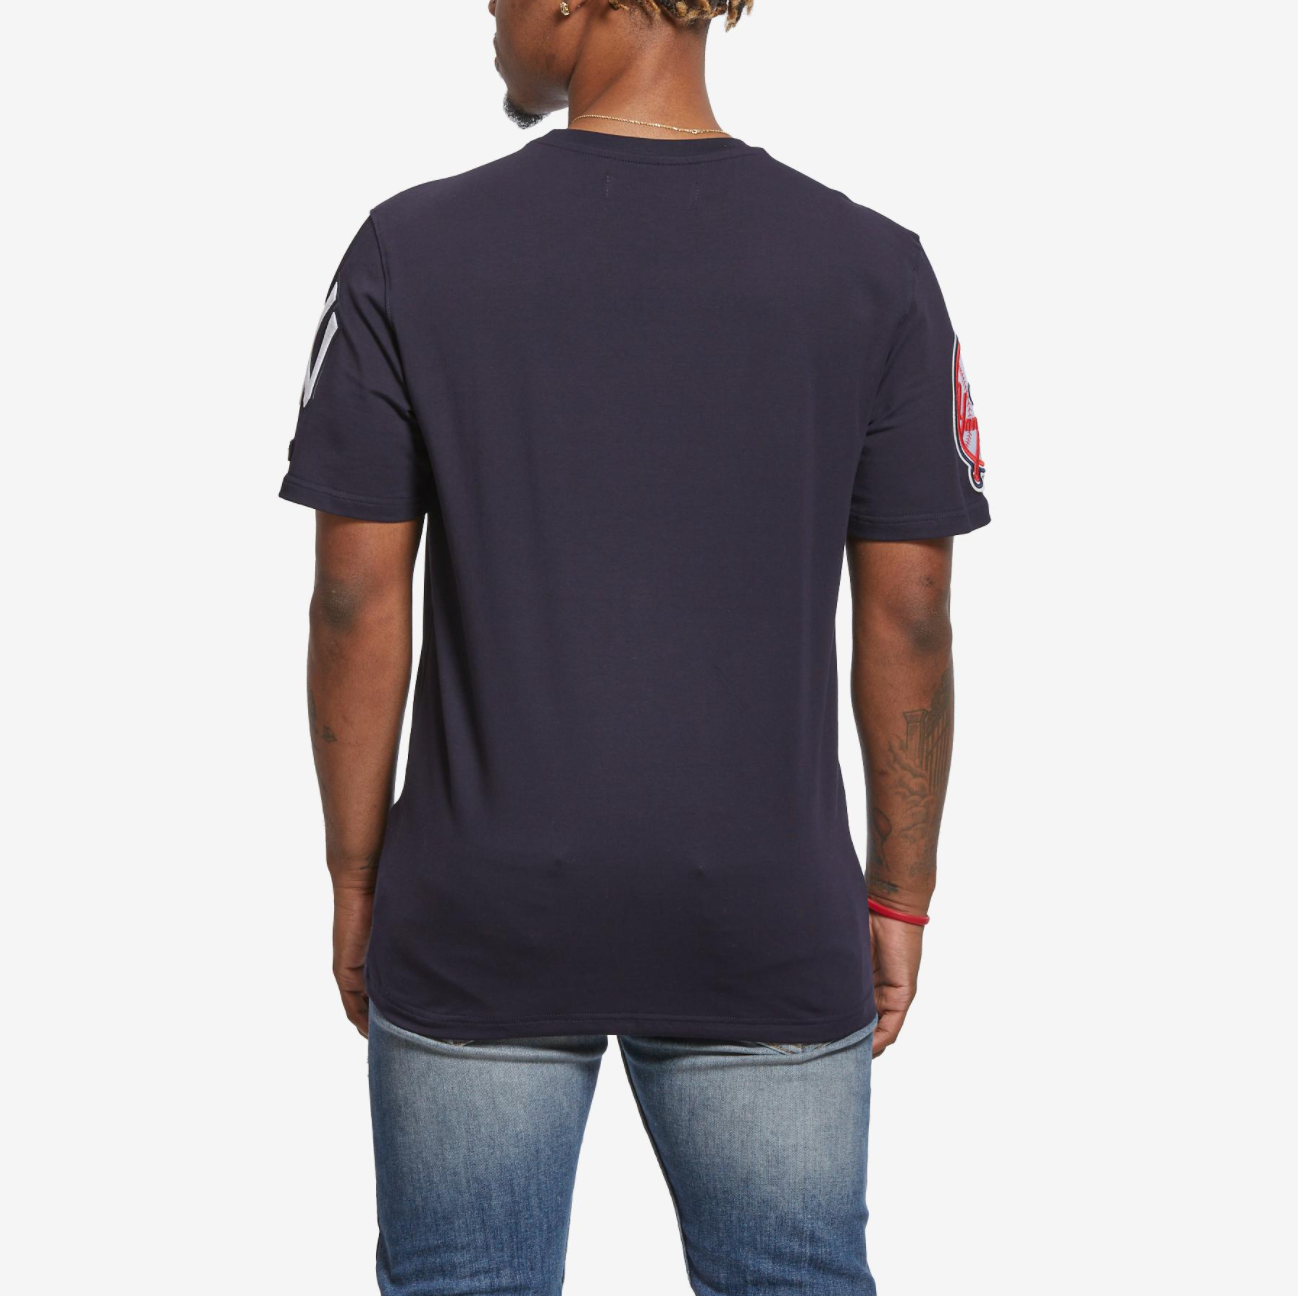 Pro Standard Mens New York Yankees Pro Team T-Shirt LNY131148-MDN Navy, L / Midnight Navy